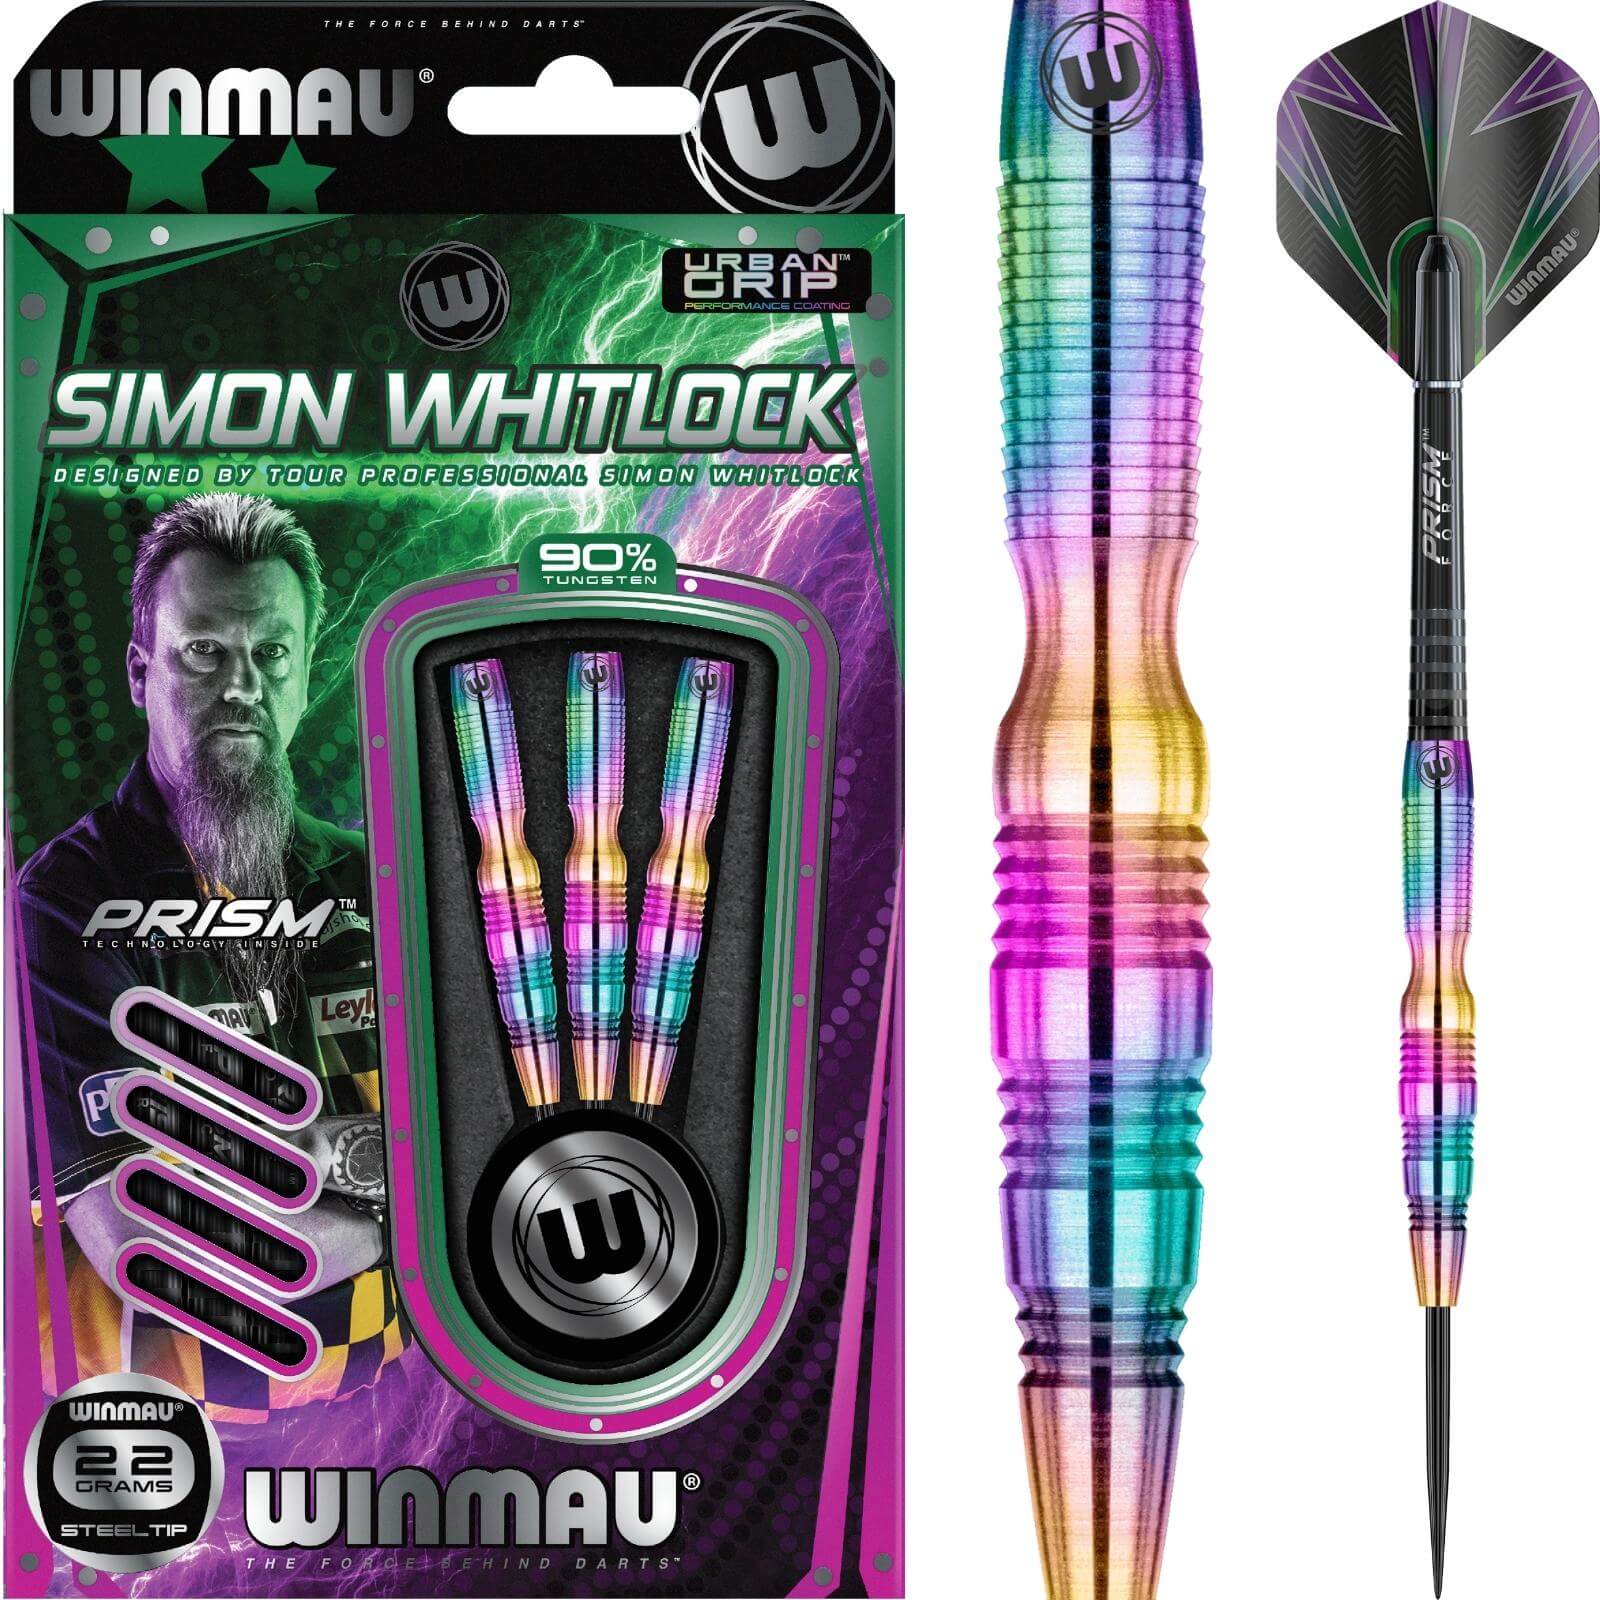 Darts - Winmau - Simon Whitlock Urban Grip Darts - Steel Tip - 90% Tungsten - 22g 24g 